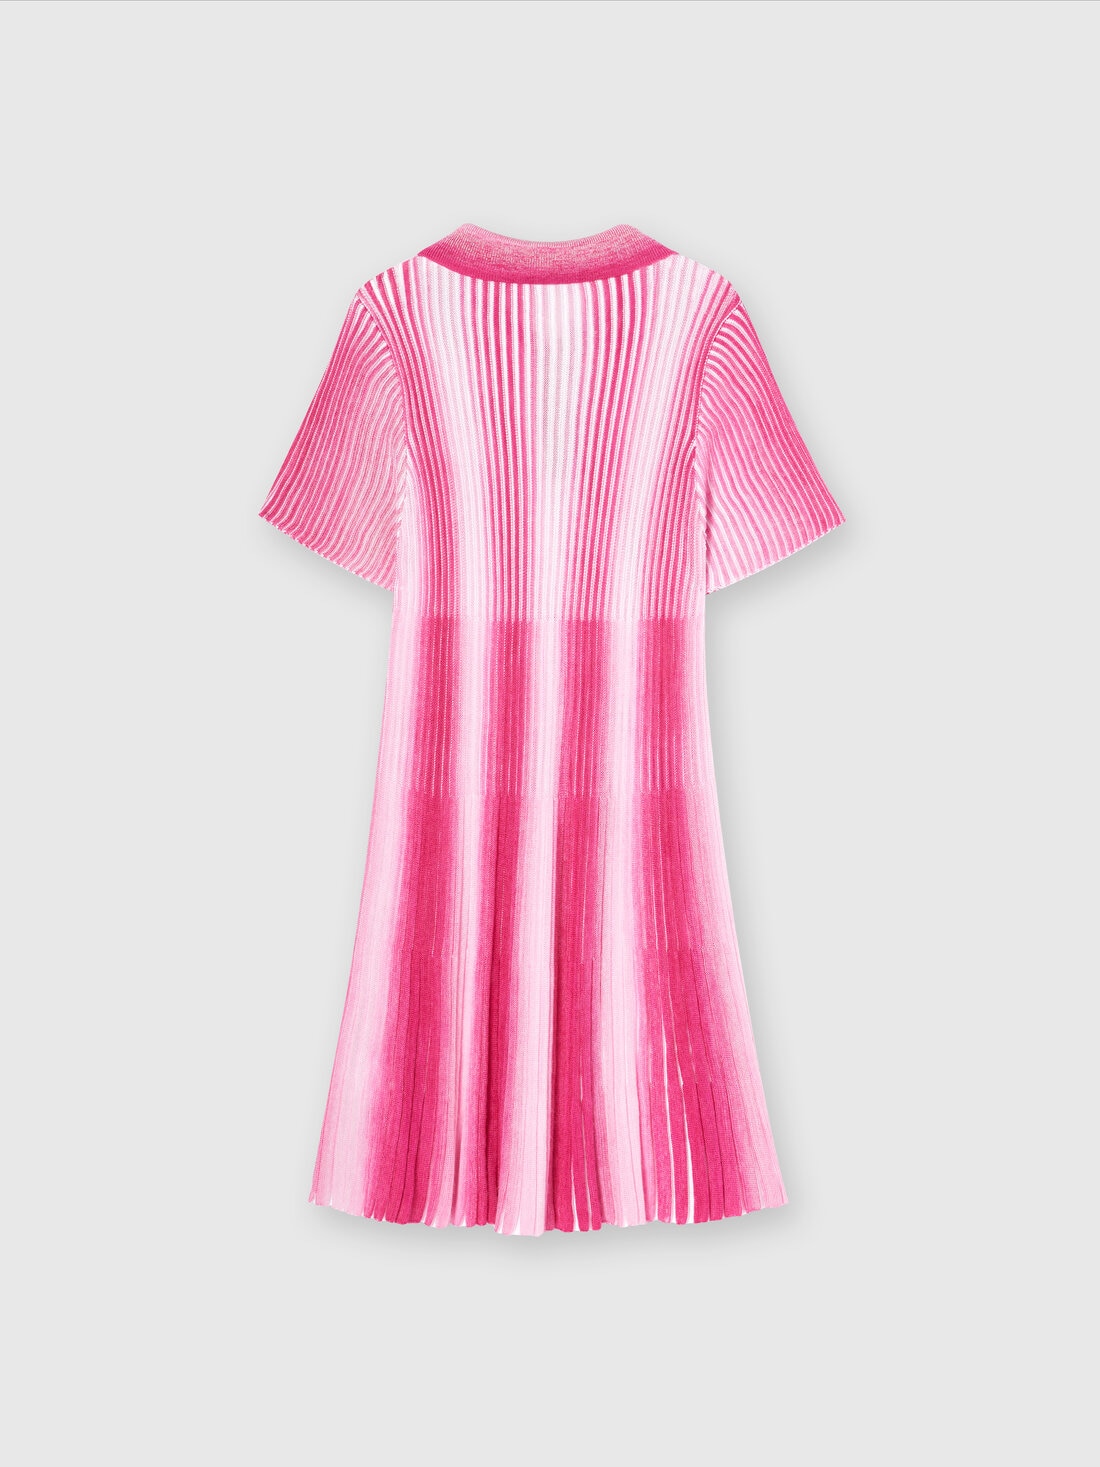 Midi dress in striped viscose knit, Pink   - KS24SG01BV00FVS30DI - 1